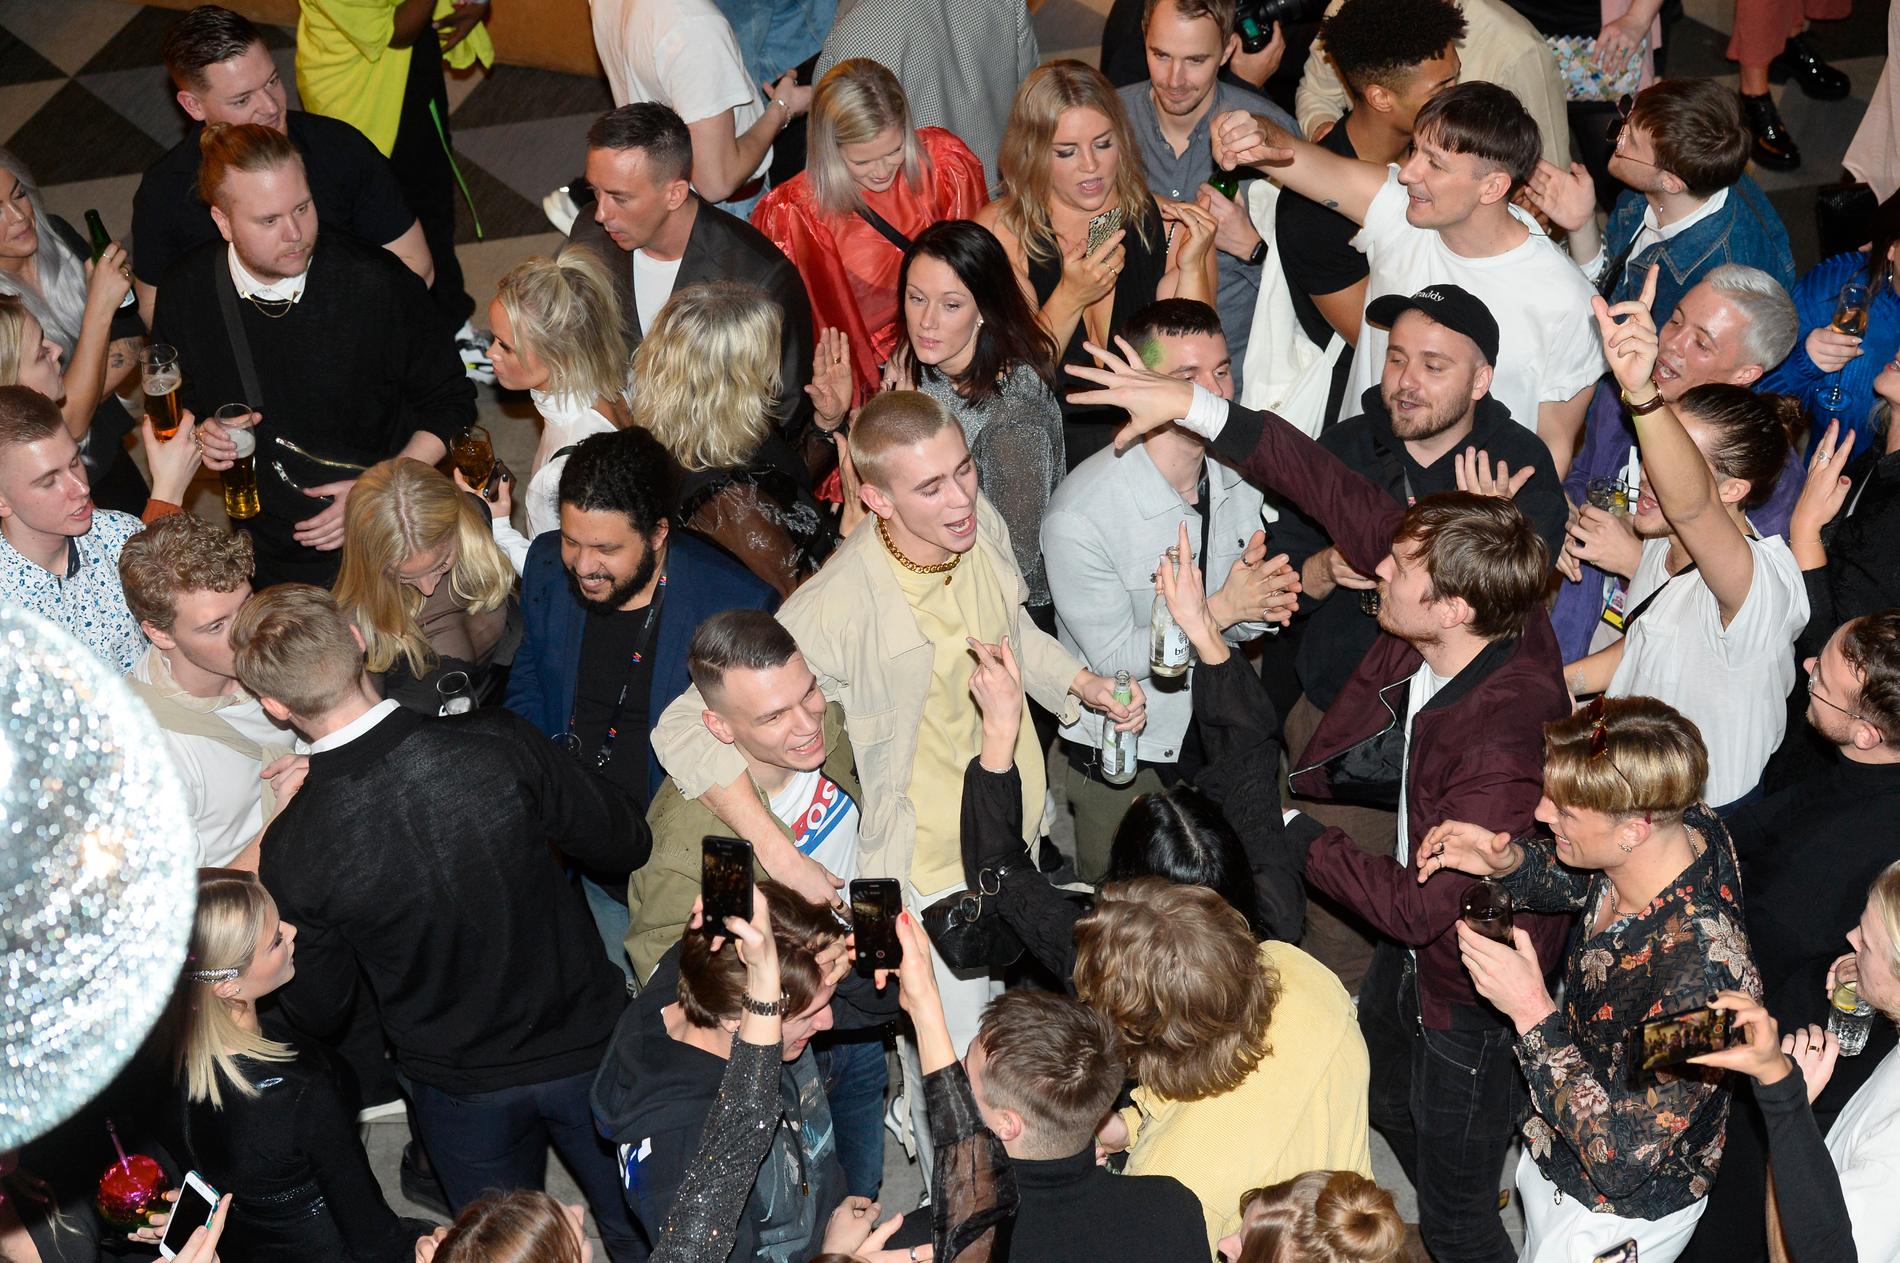 Det var inga sura miner när Felix Sandman kom till Melodifestivalens efterfest